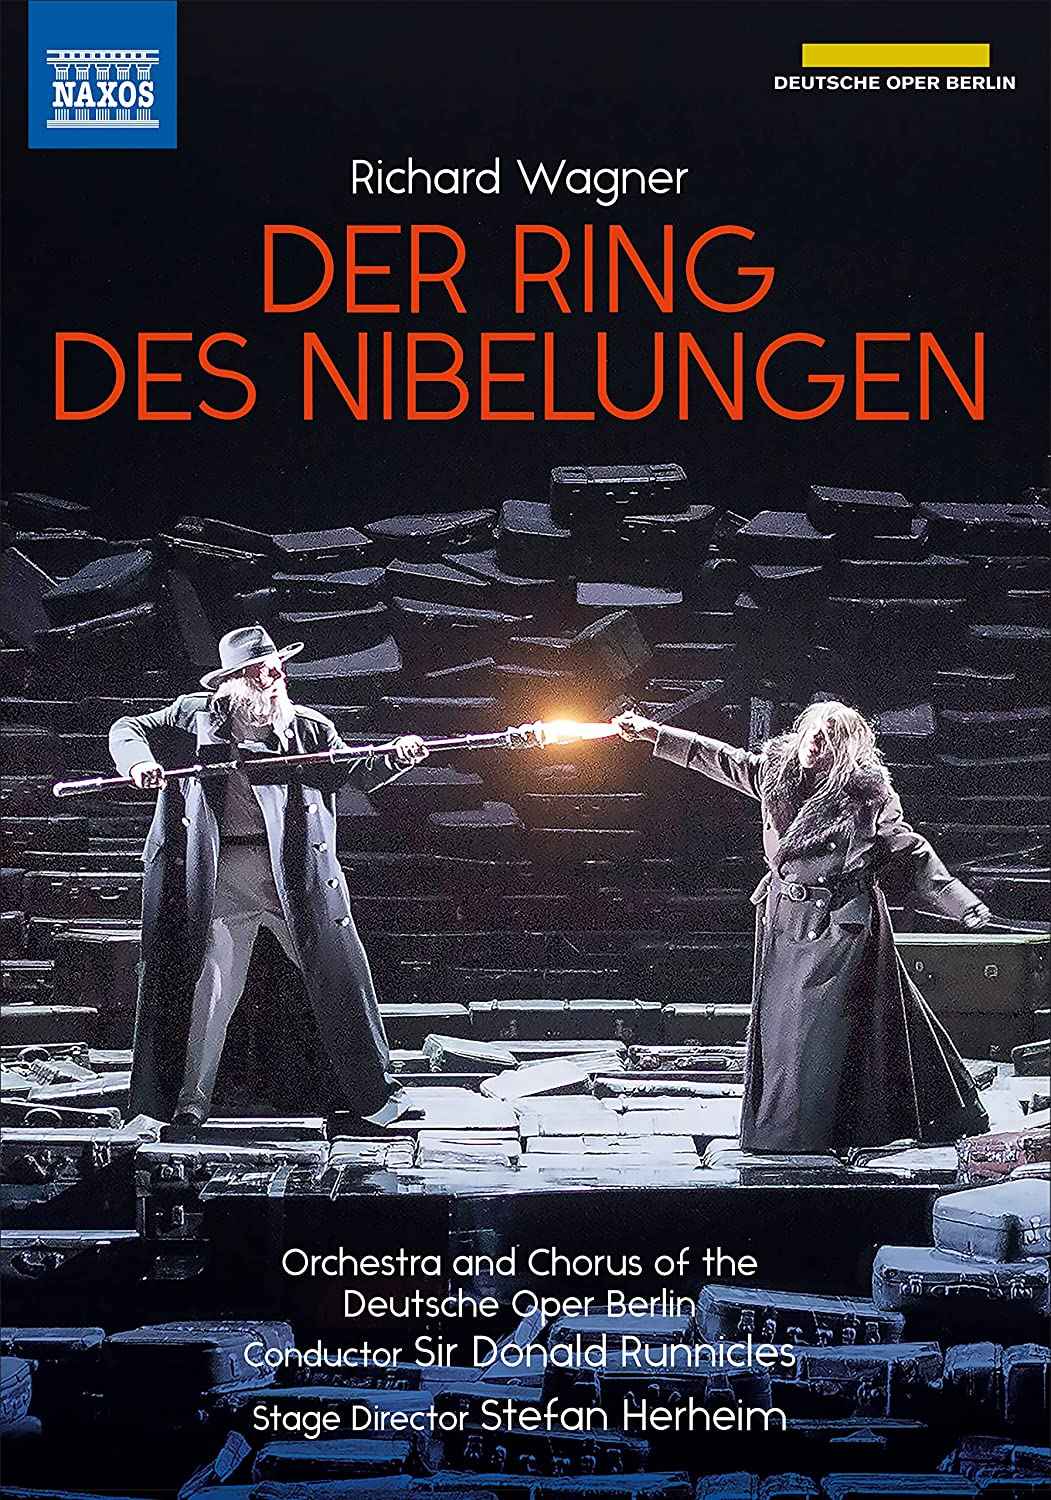 Derek in Deutsche Oper Berlin - Richard Wagner - Das Rheingold - Wotan